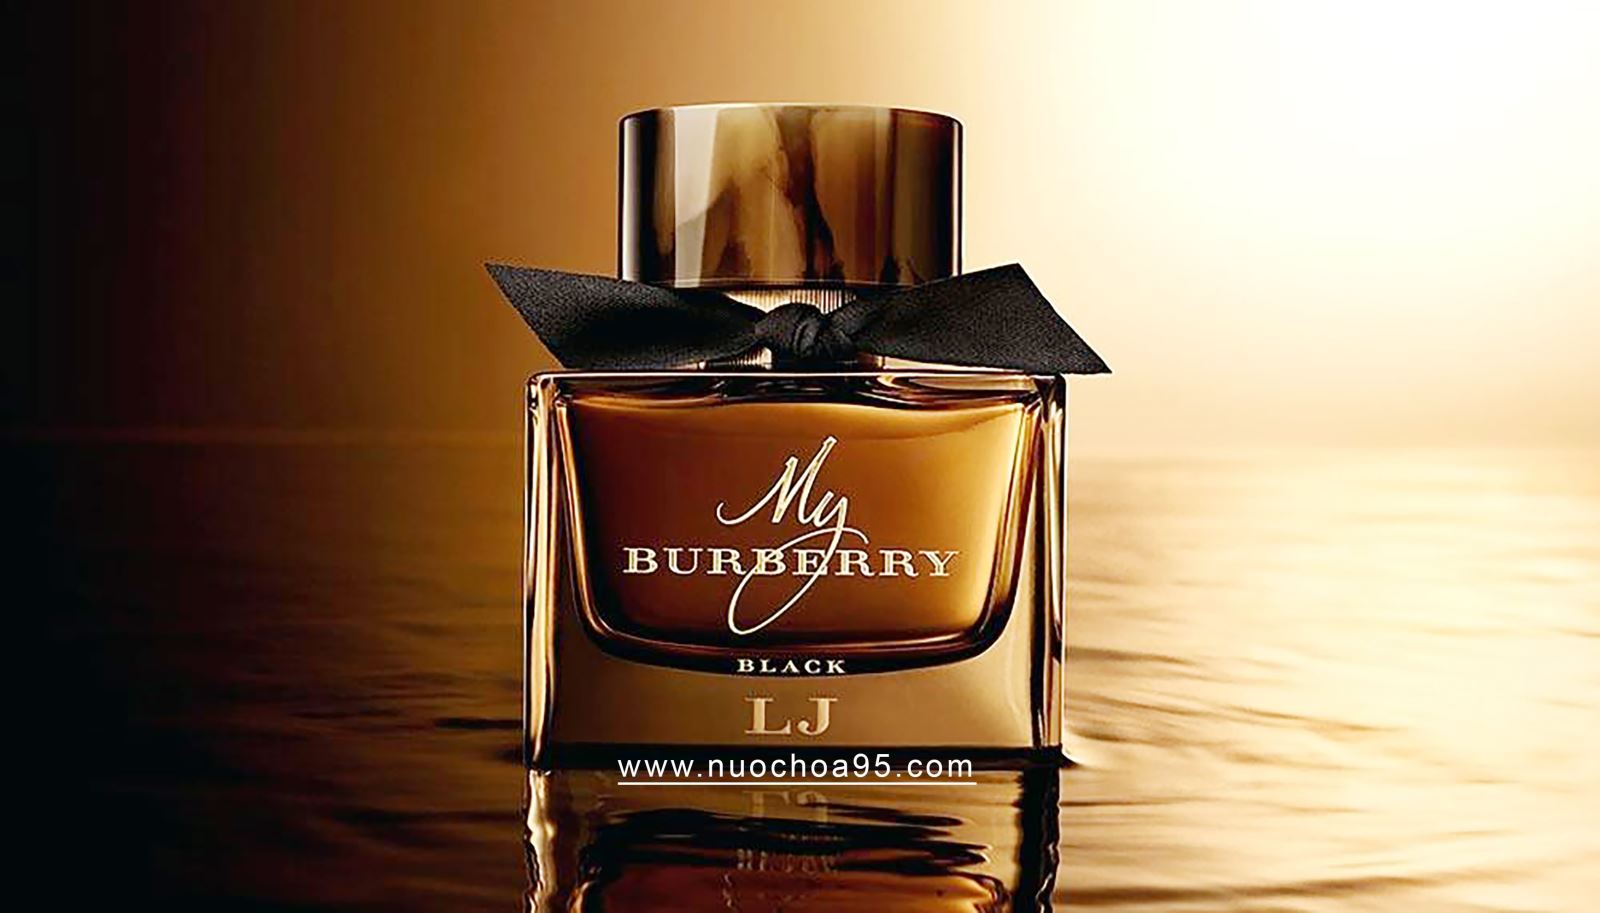 Nước hoa My Burberry Black - Ảnh 1